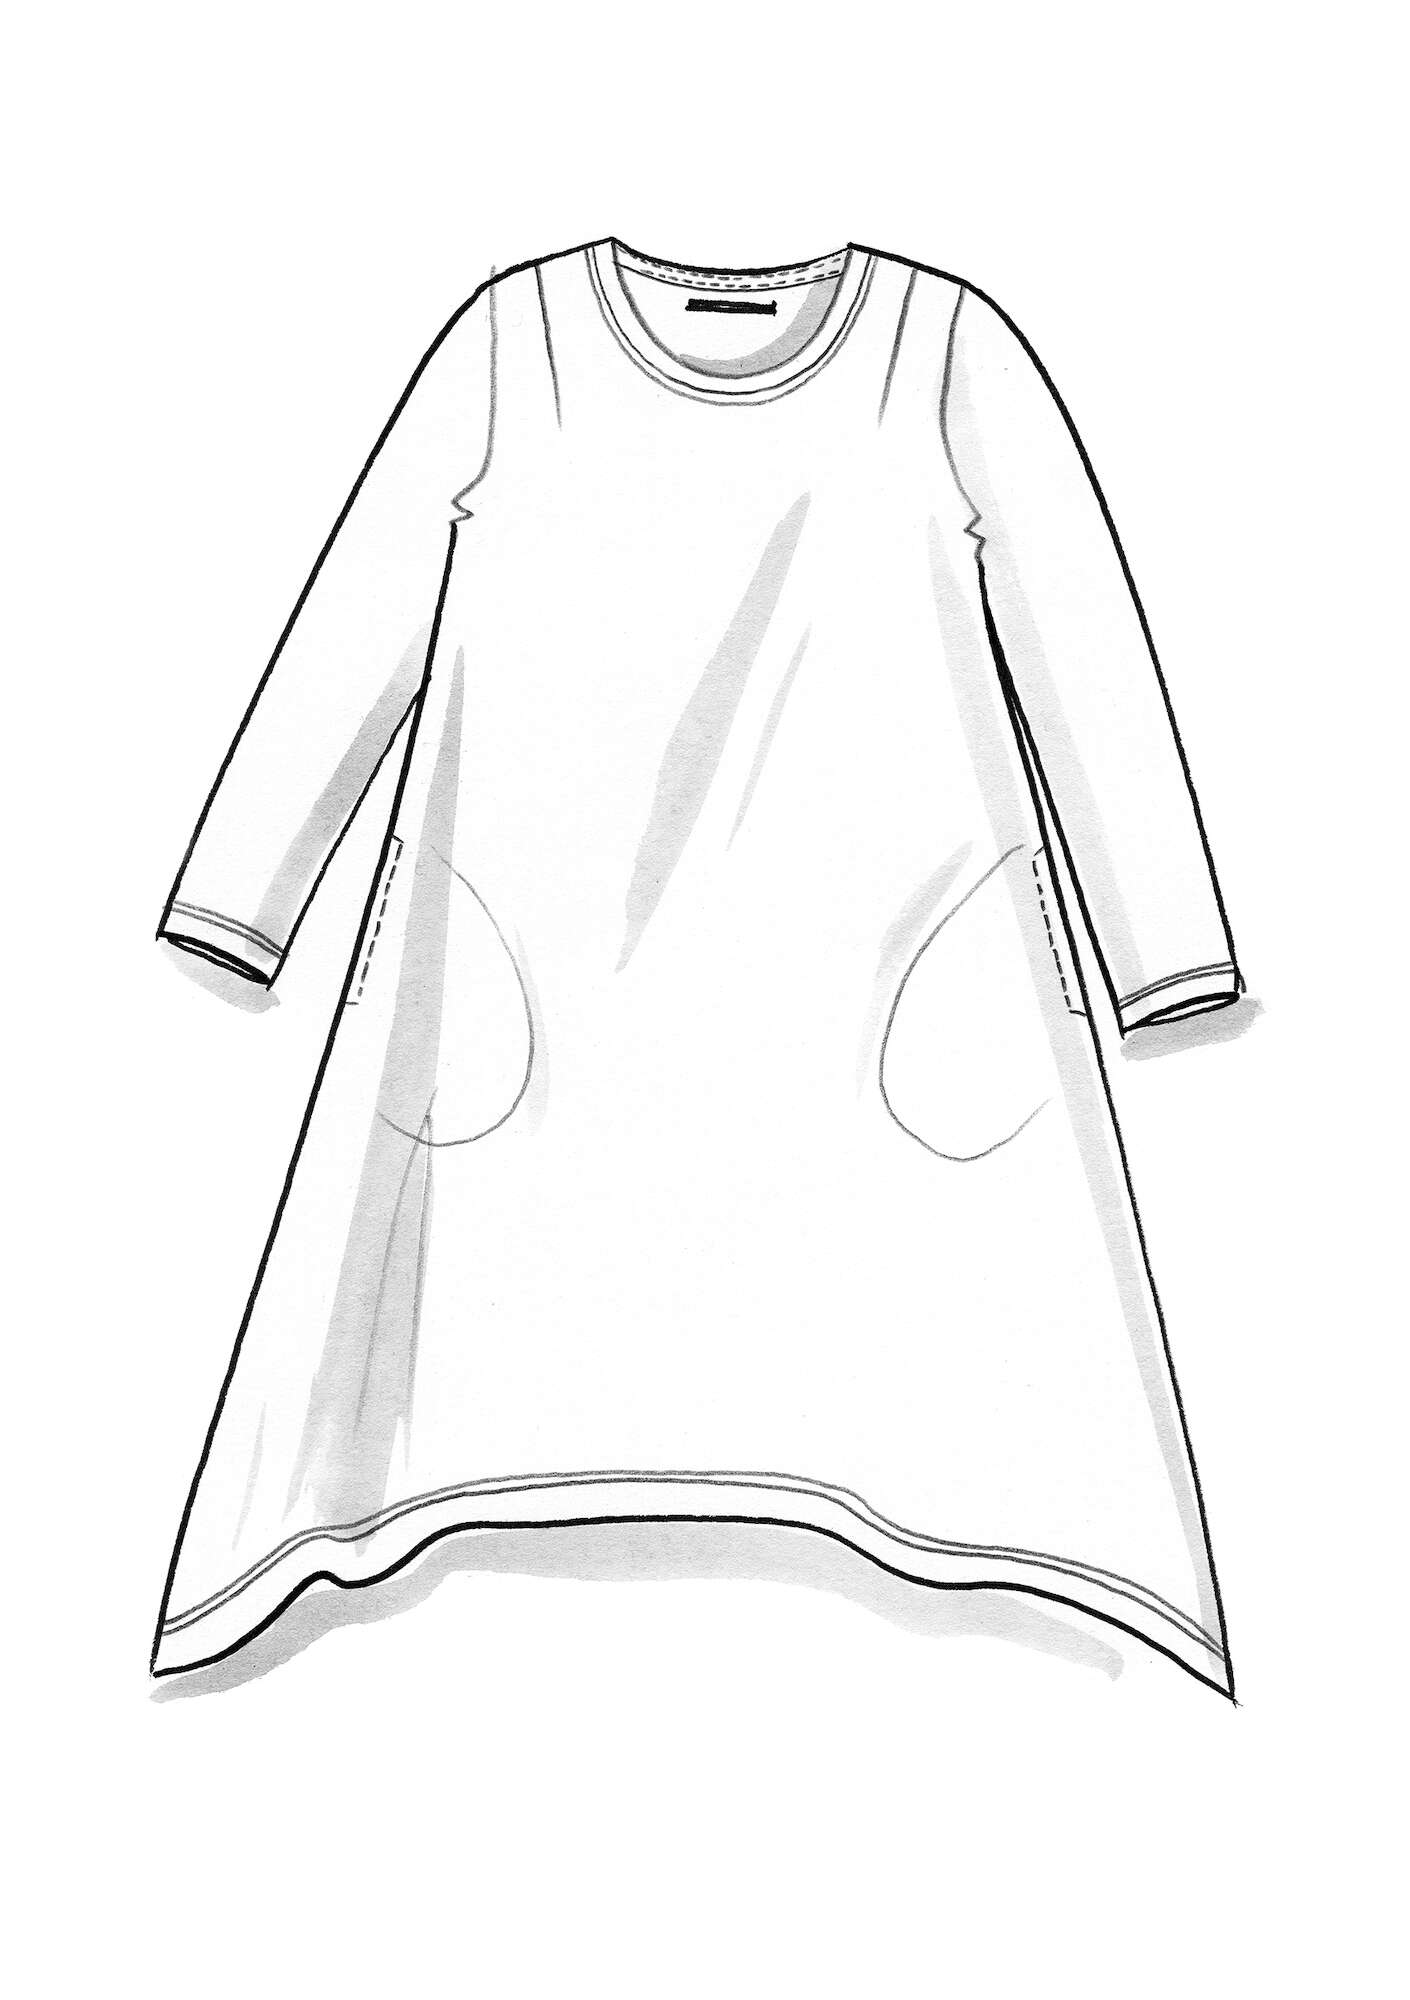 Tricot jurk van lyocell/elastaan veronagroen